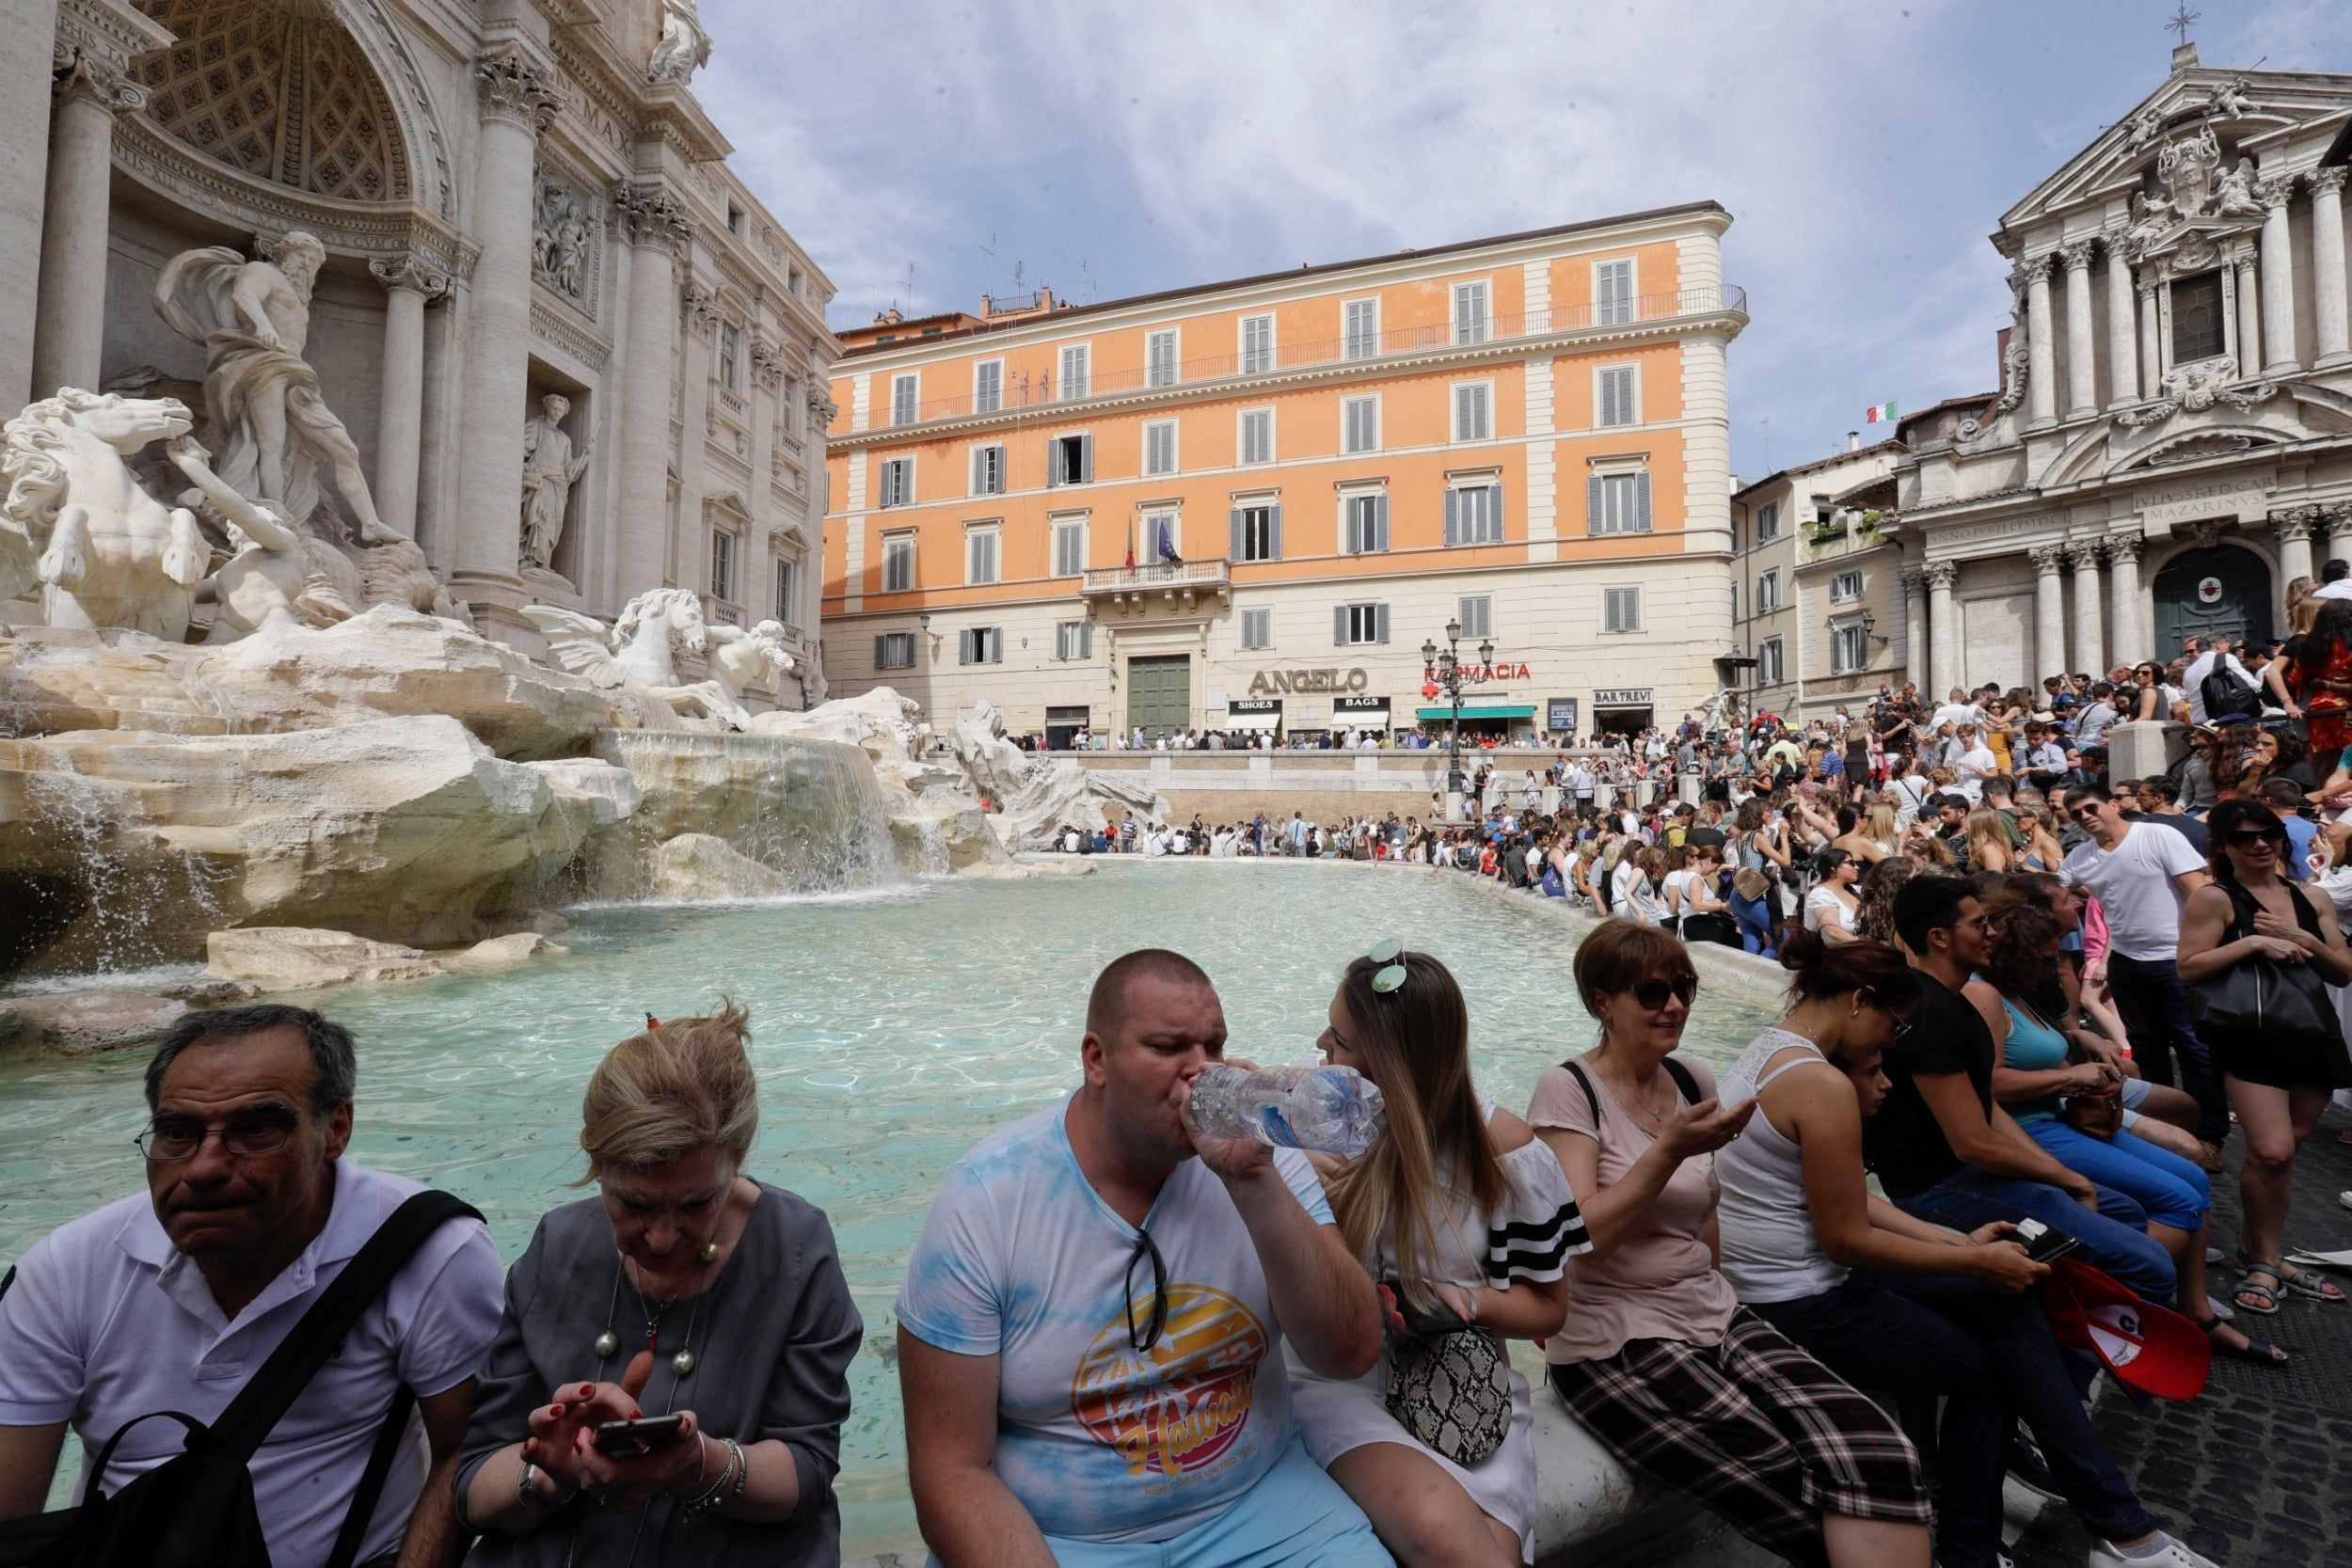 Борьба с туристами: в Риме запретили продажу сувениров возле достопримечательностей